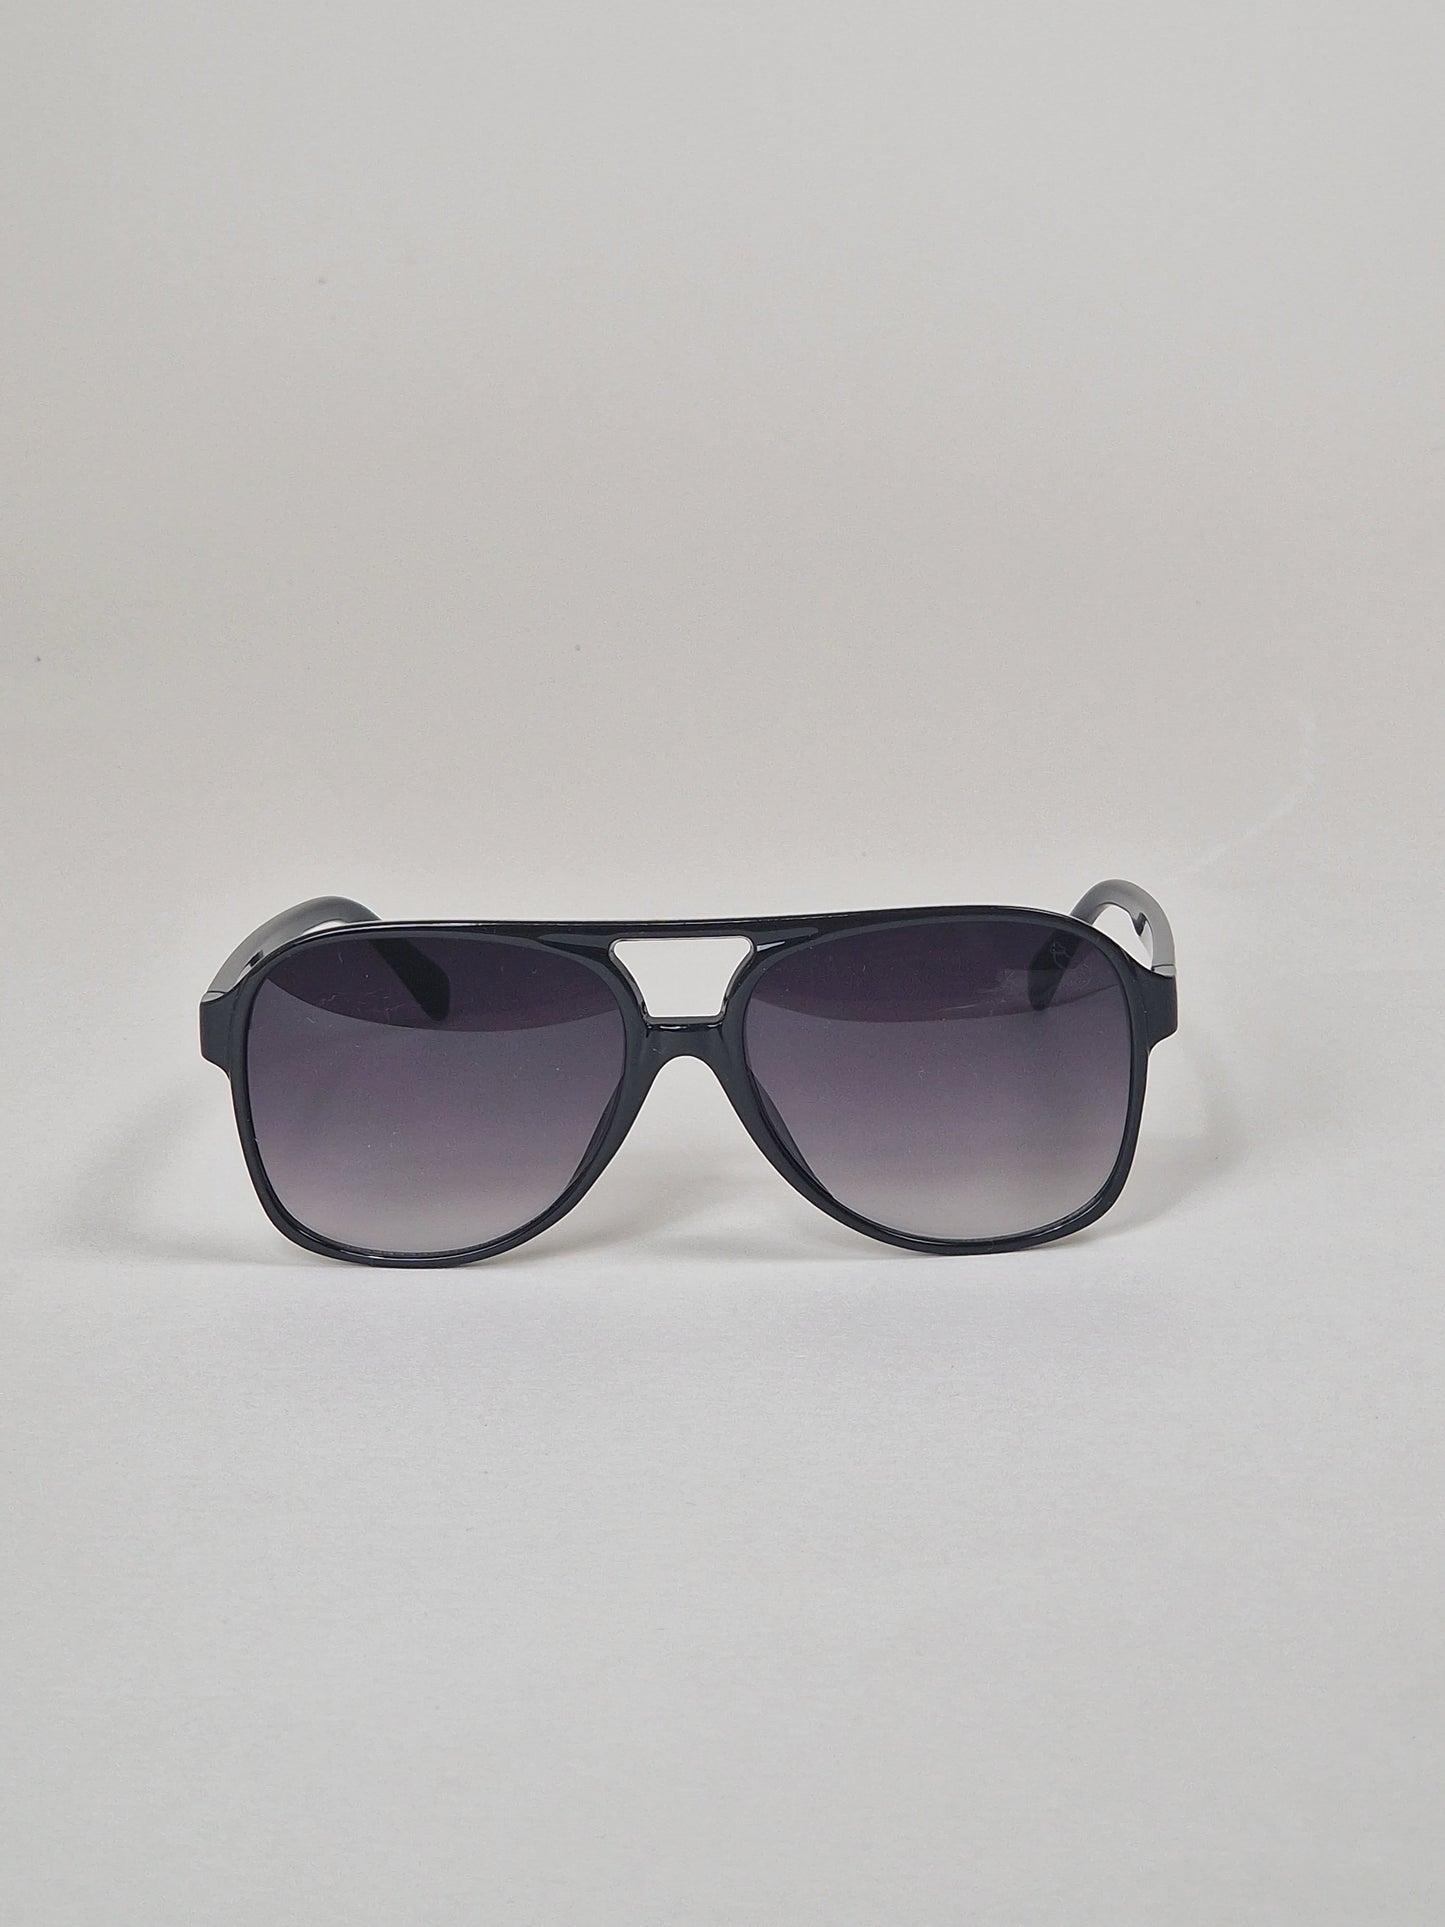 Solglasögon, modell 45 - Lilatintade.